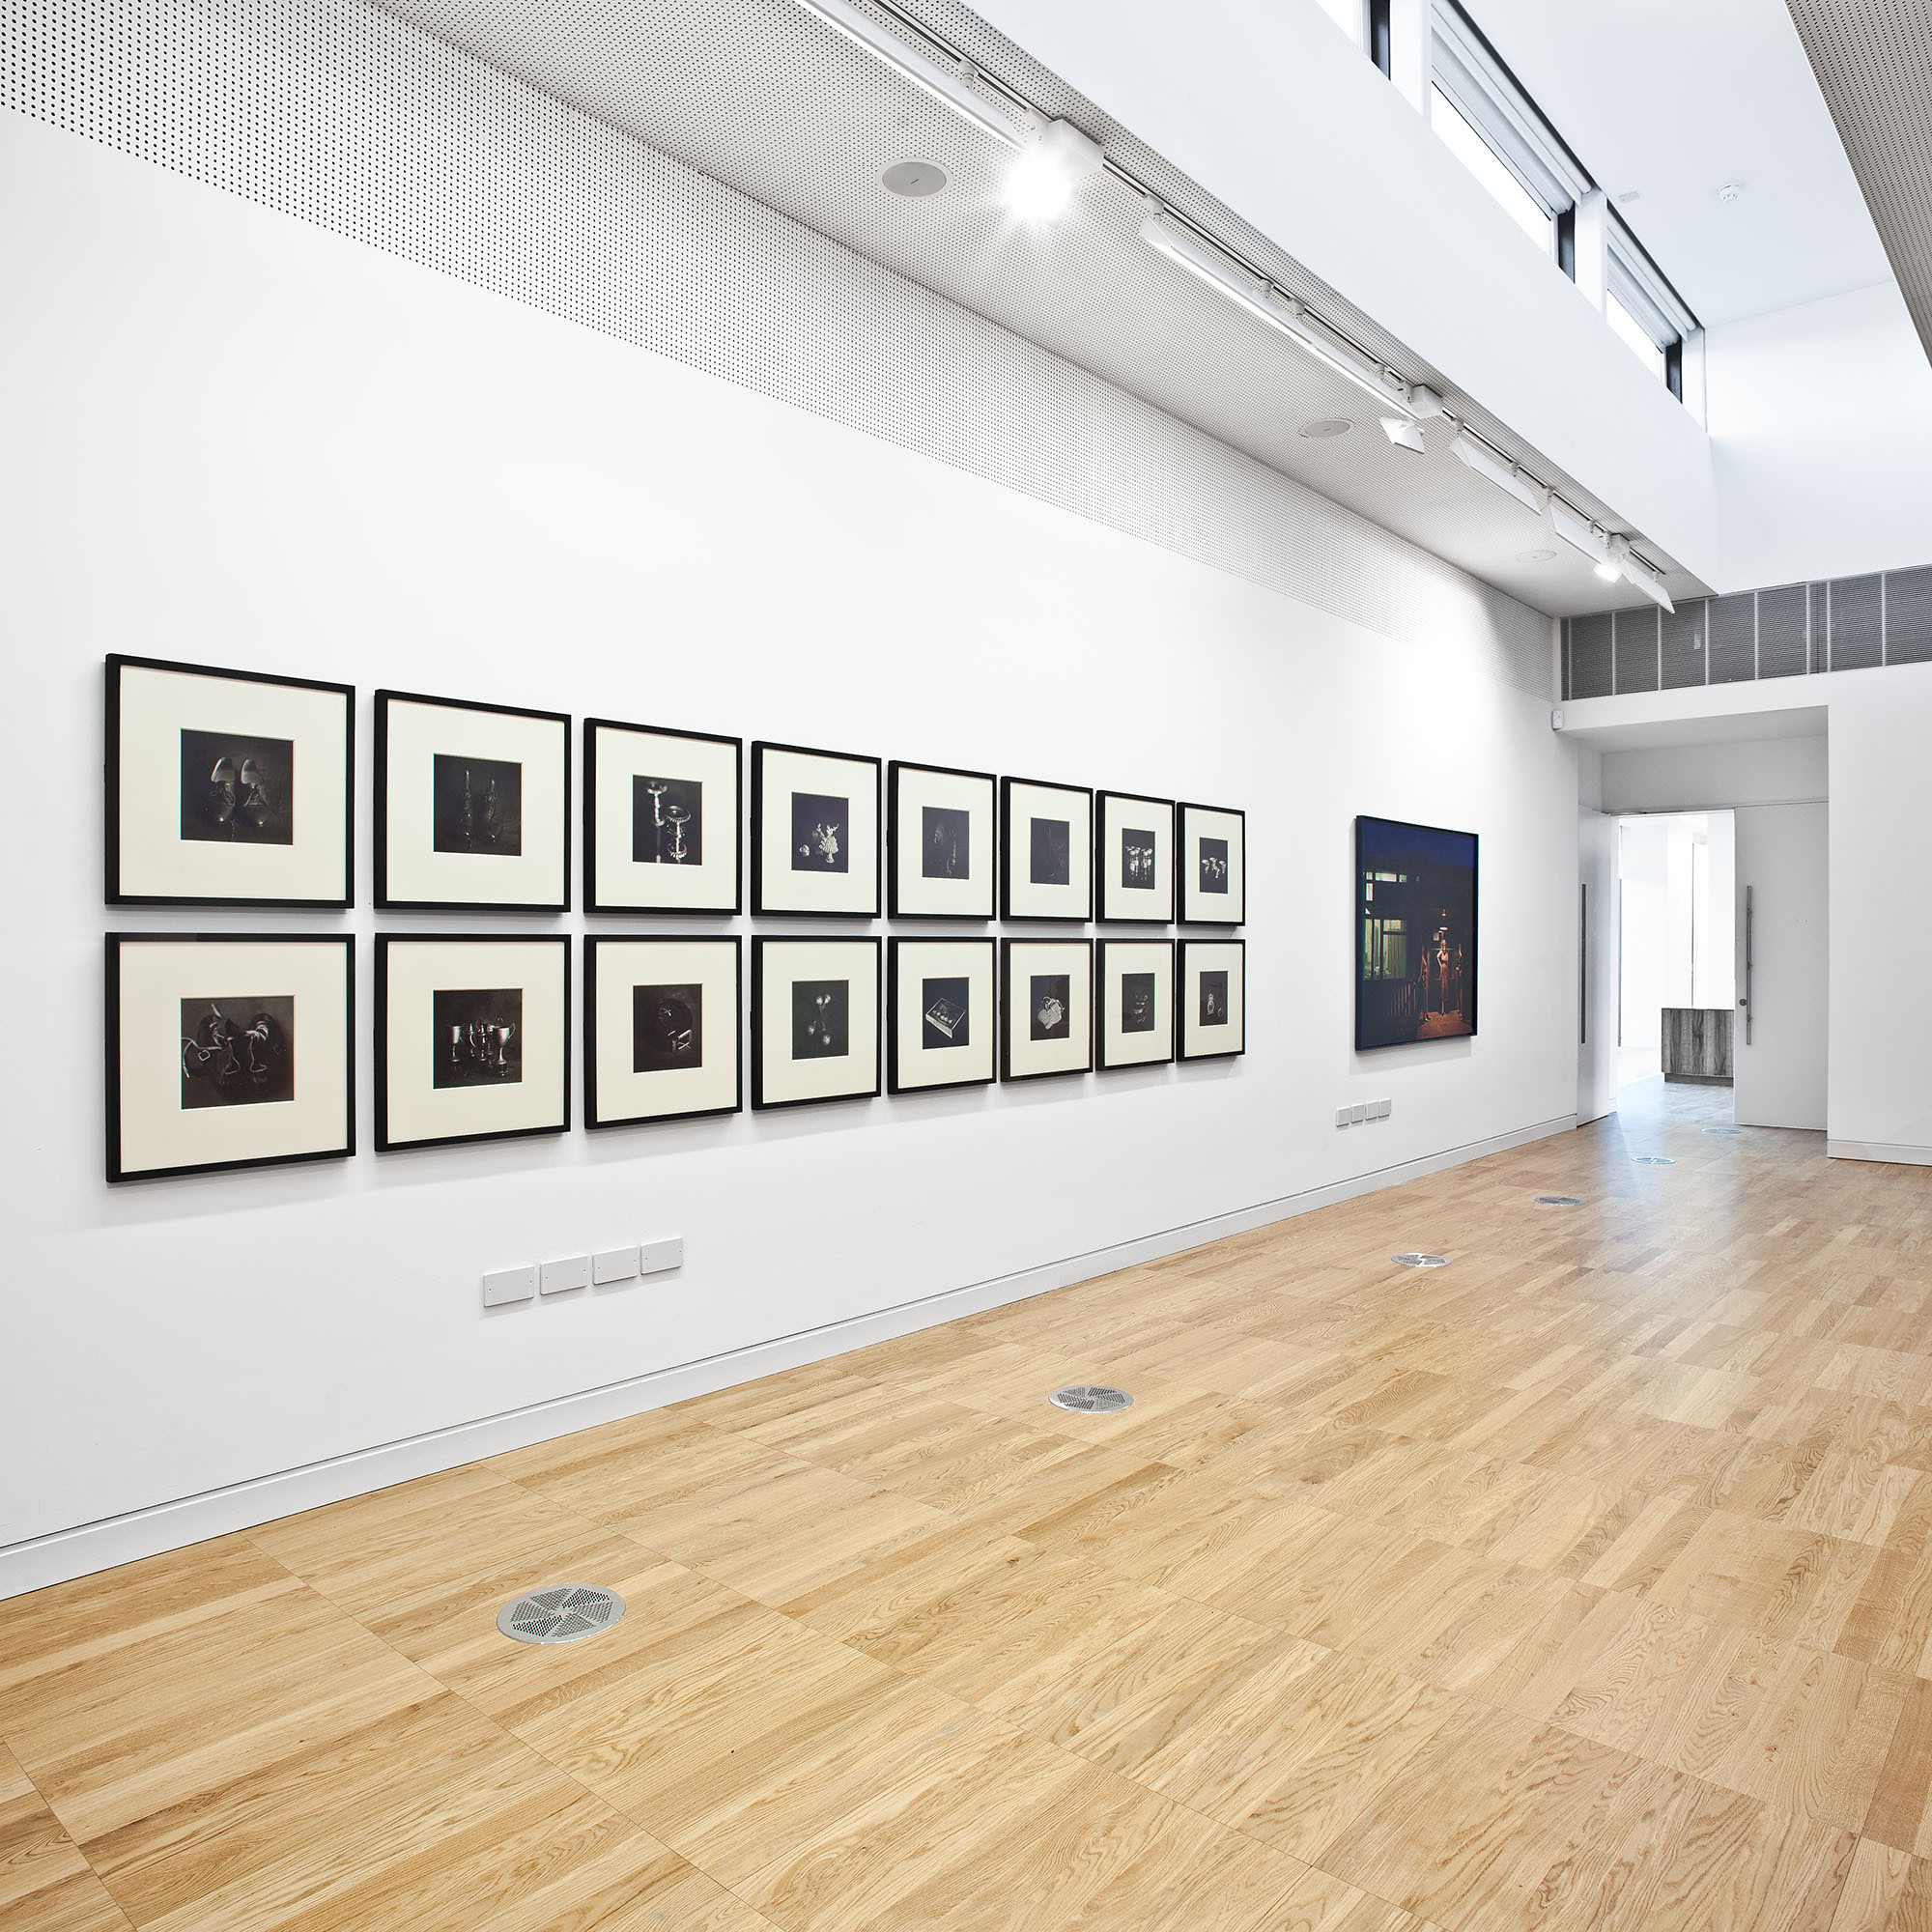 Luan Gallery Exhibition